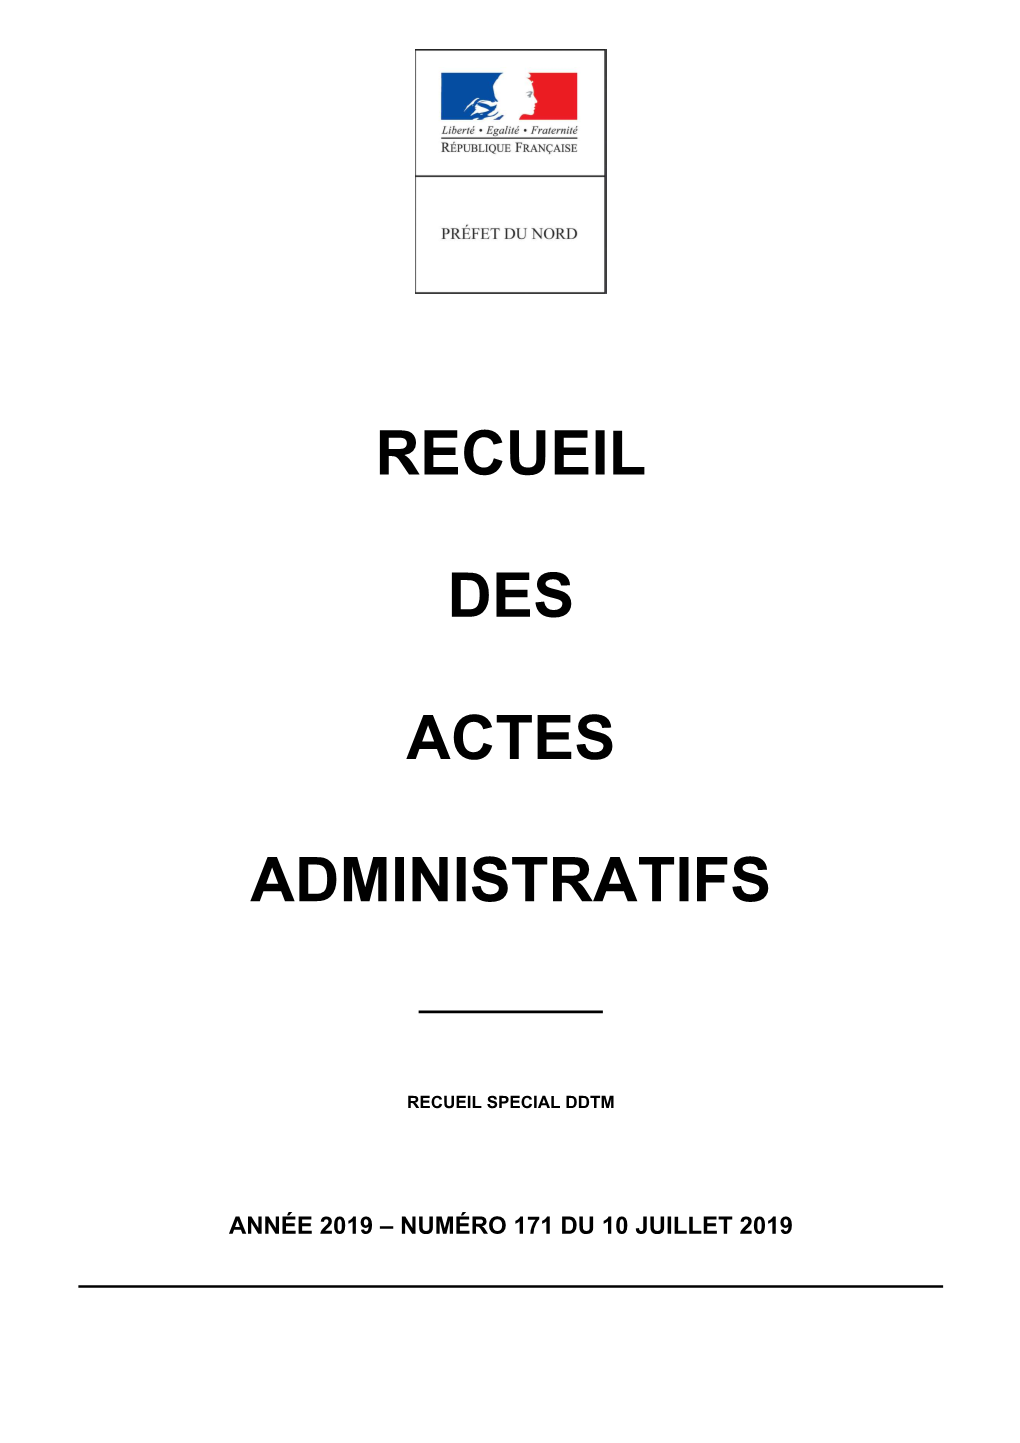 Recueil Des Actes Administratifs De La Préfecture Du Nord Année 2019- Recueil N°171 Du 10 Juillet 2019 2019 2019